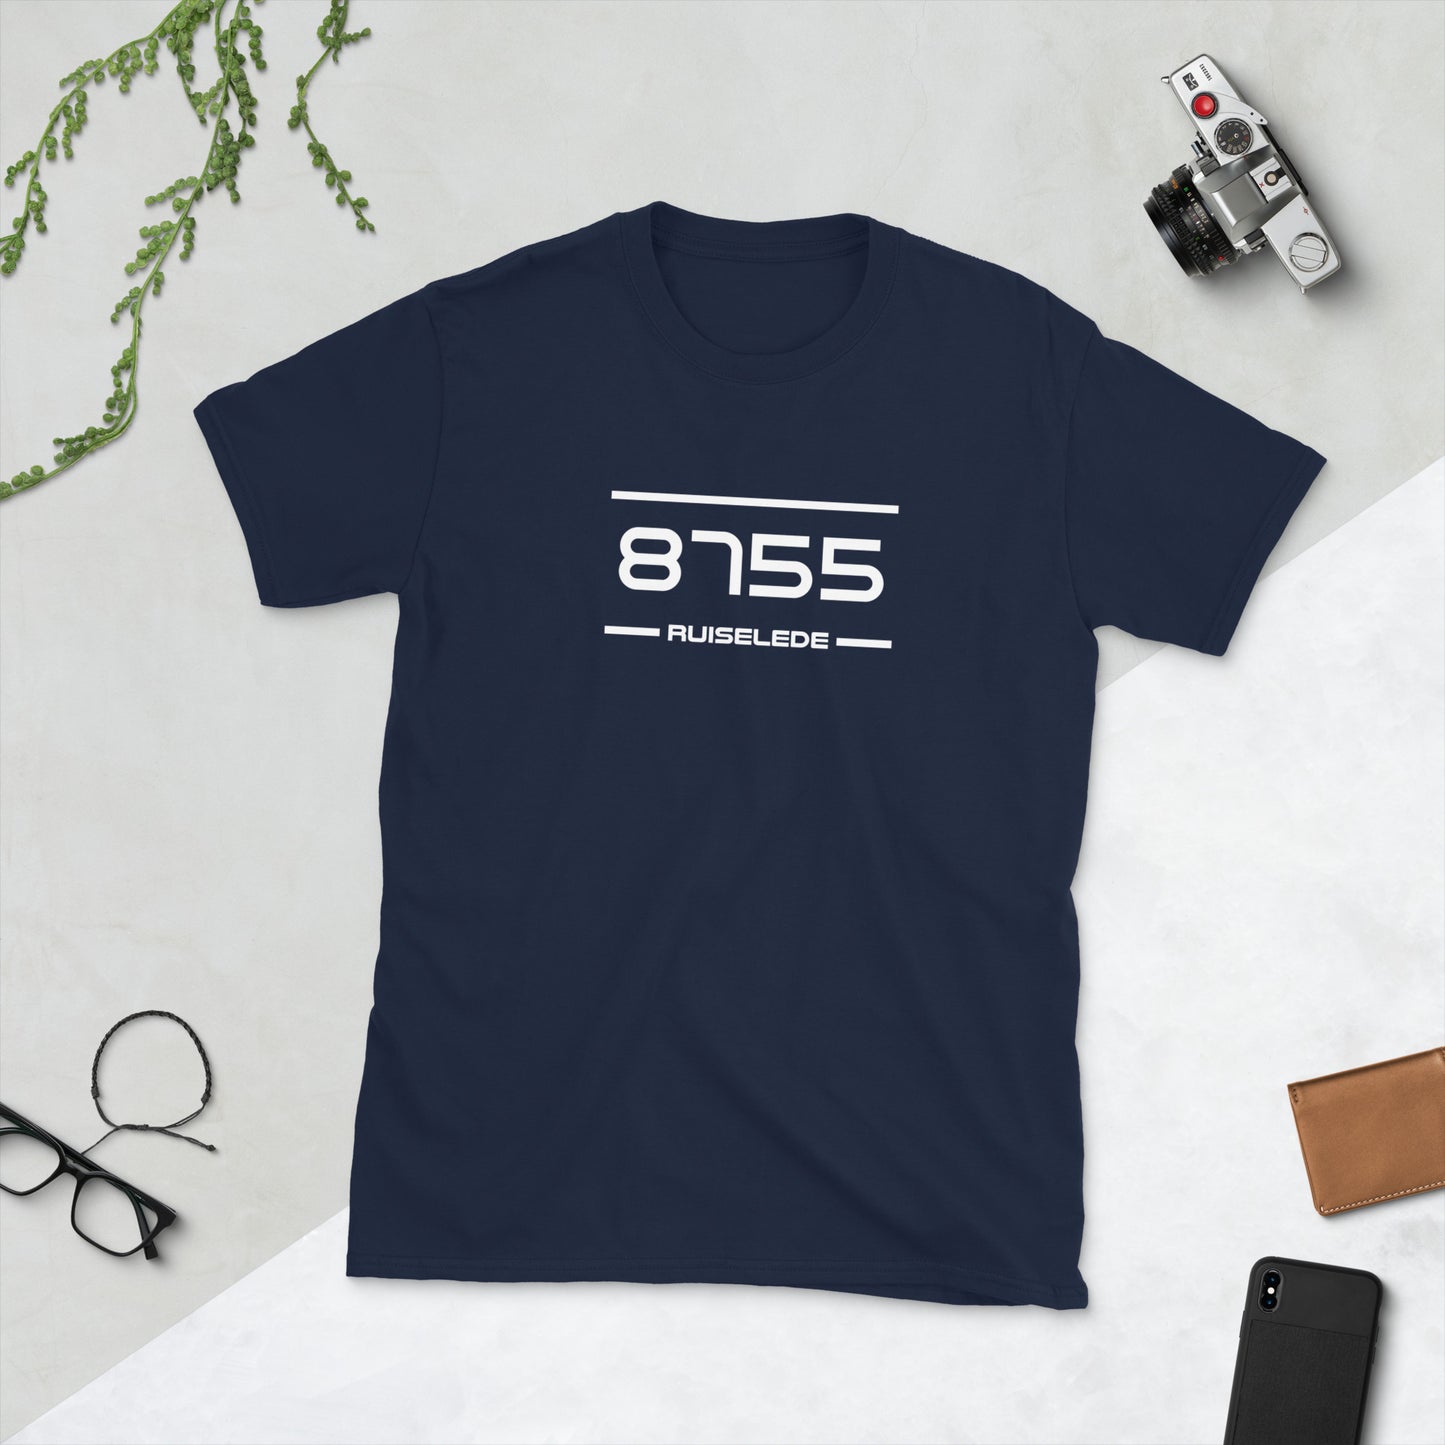 Tshirt - 8755 - Ruiselede